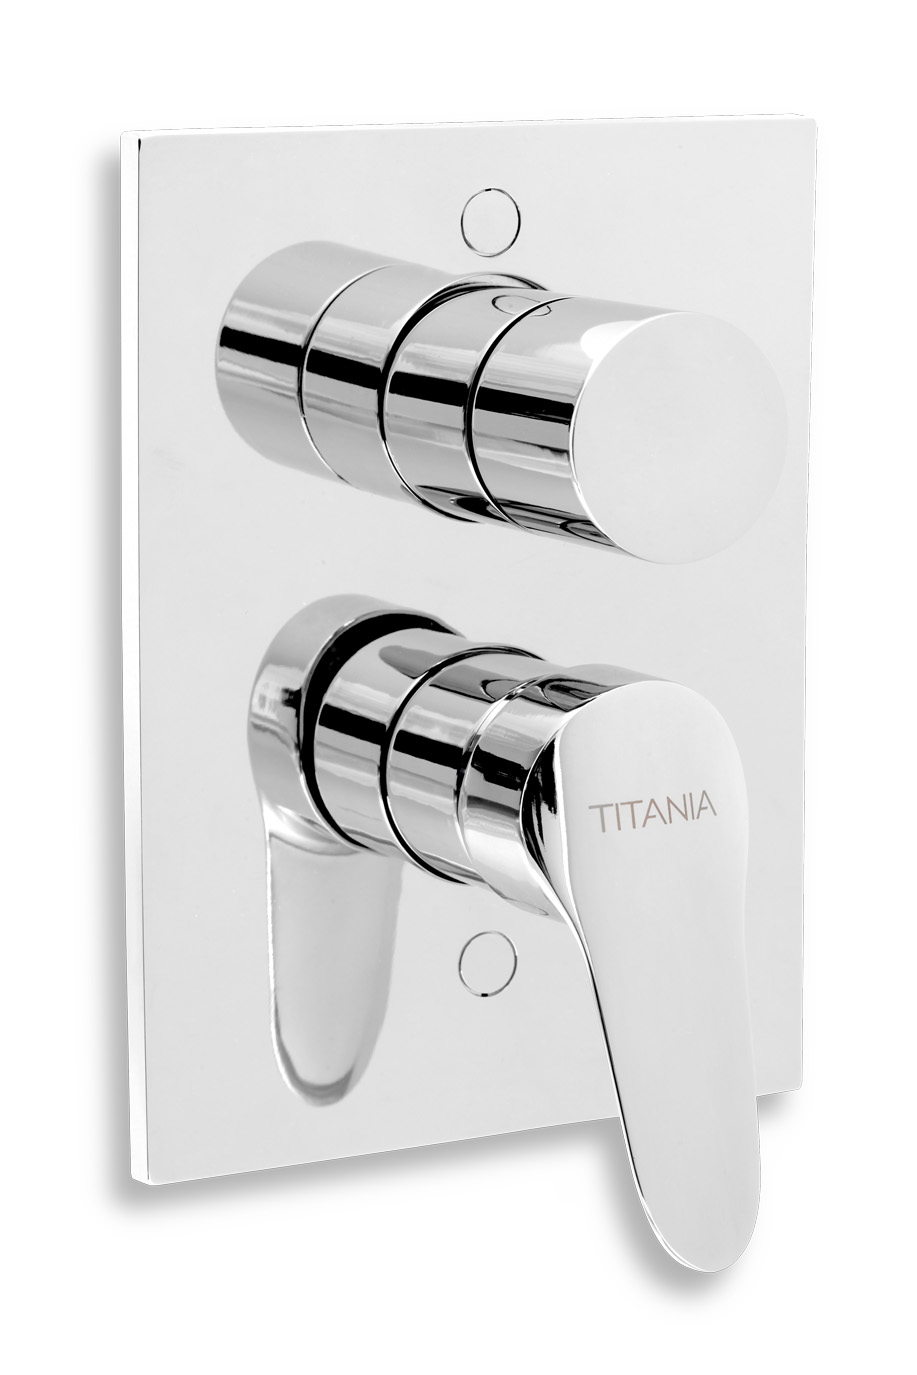 NOVASERVIS Vanová sprchová baterie s přepínačem Titania IRIS New chrom